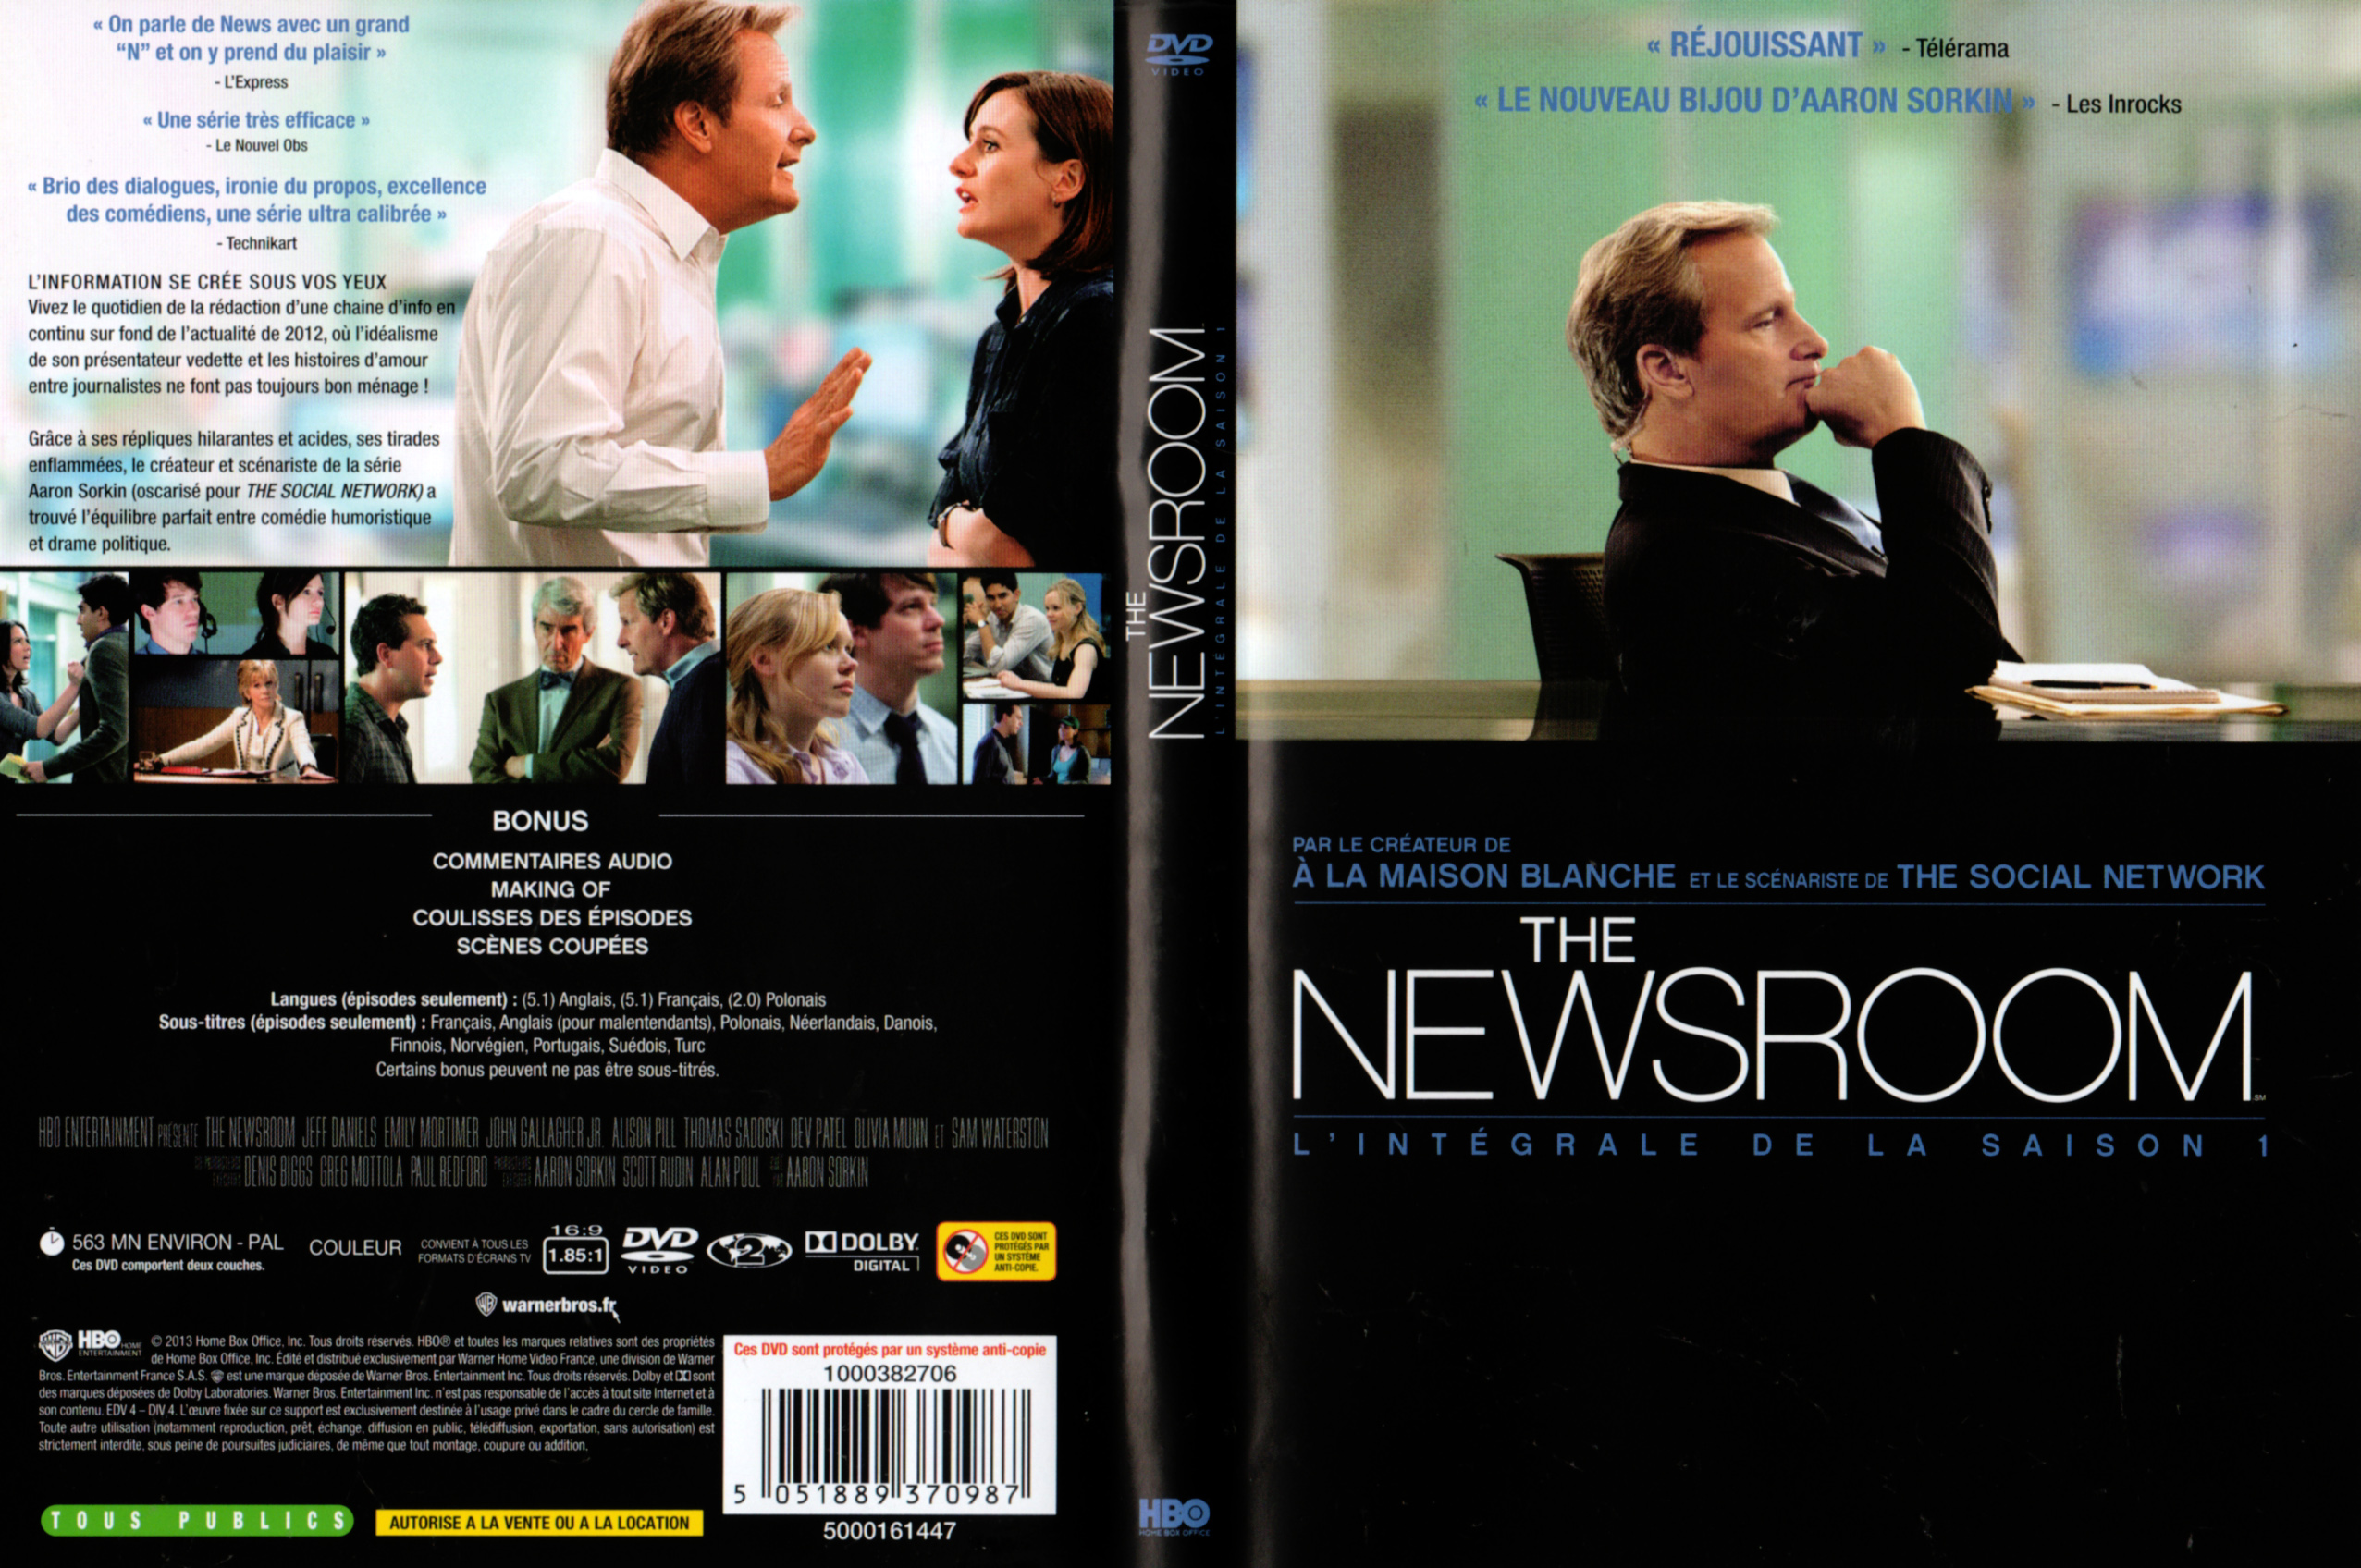 Jaquette Dvd De The Newsroom Saison 1 Cinéma Passion 